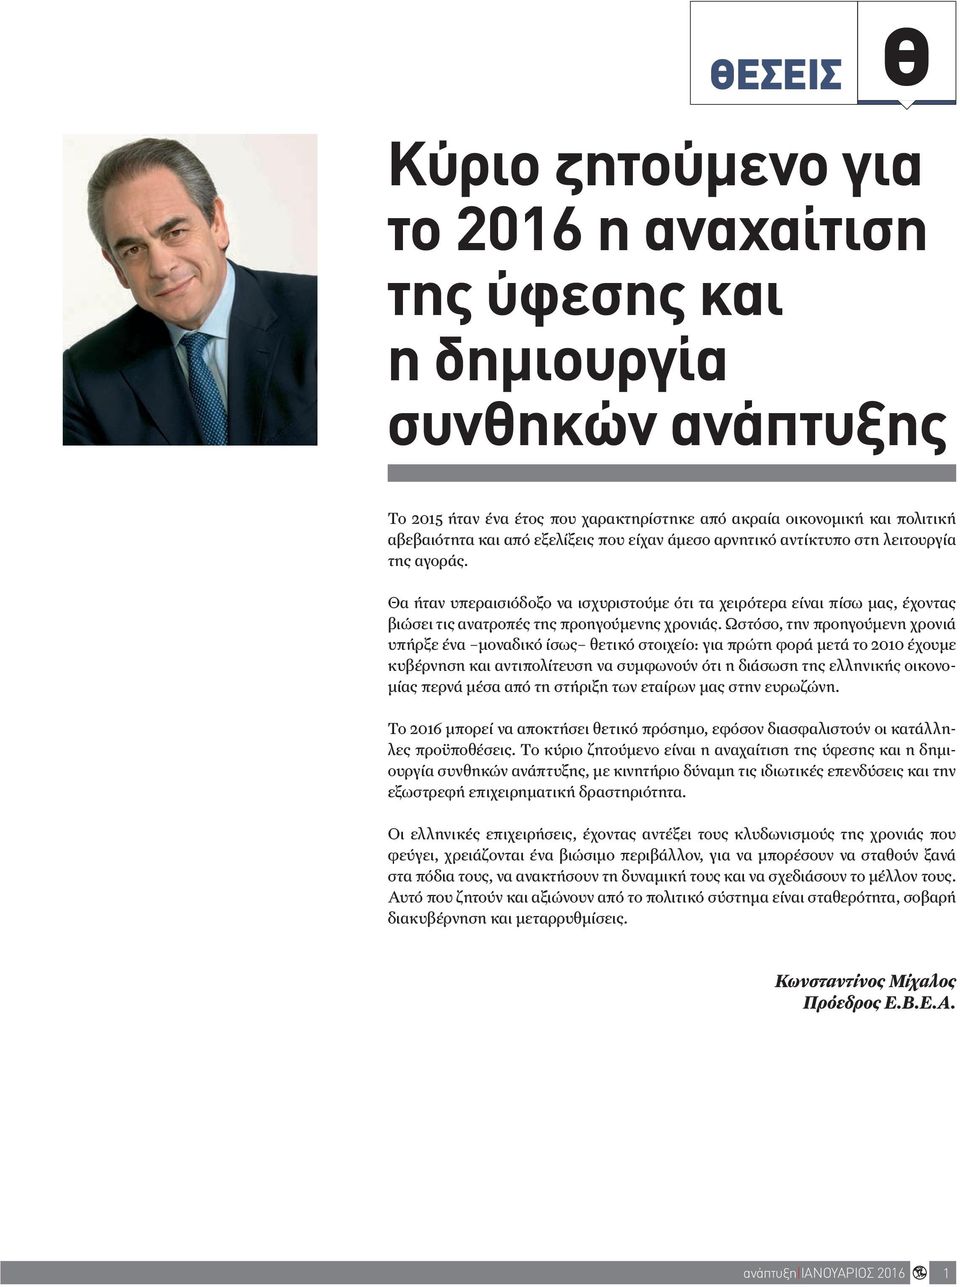 Ωστόσο, την προηγούμενη χρονιά υπήρξε ένα μοναδικό ίσως θετικό στοιχείο: για πρώτη φορά μετά το 2010 έχουμε κυβέρνηση και αντιπολίτευση να συμφωνούν ότι η διάσωση της ελληνικής οικονομίας περνά μέσα